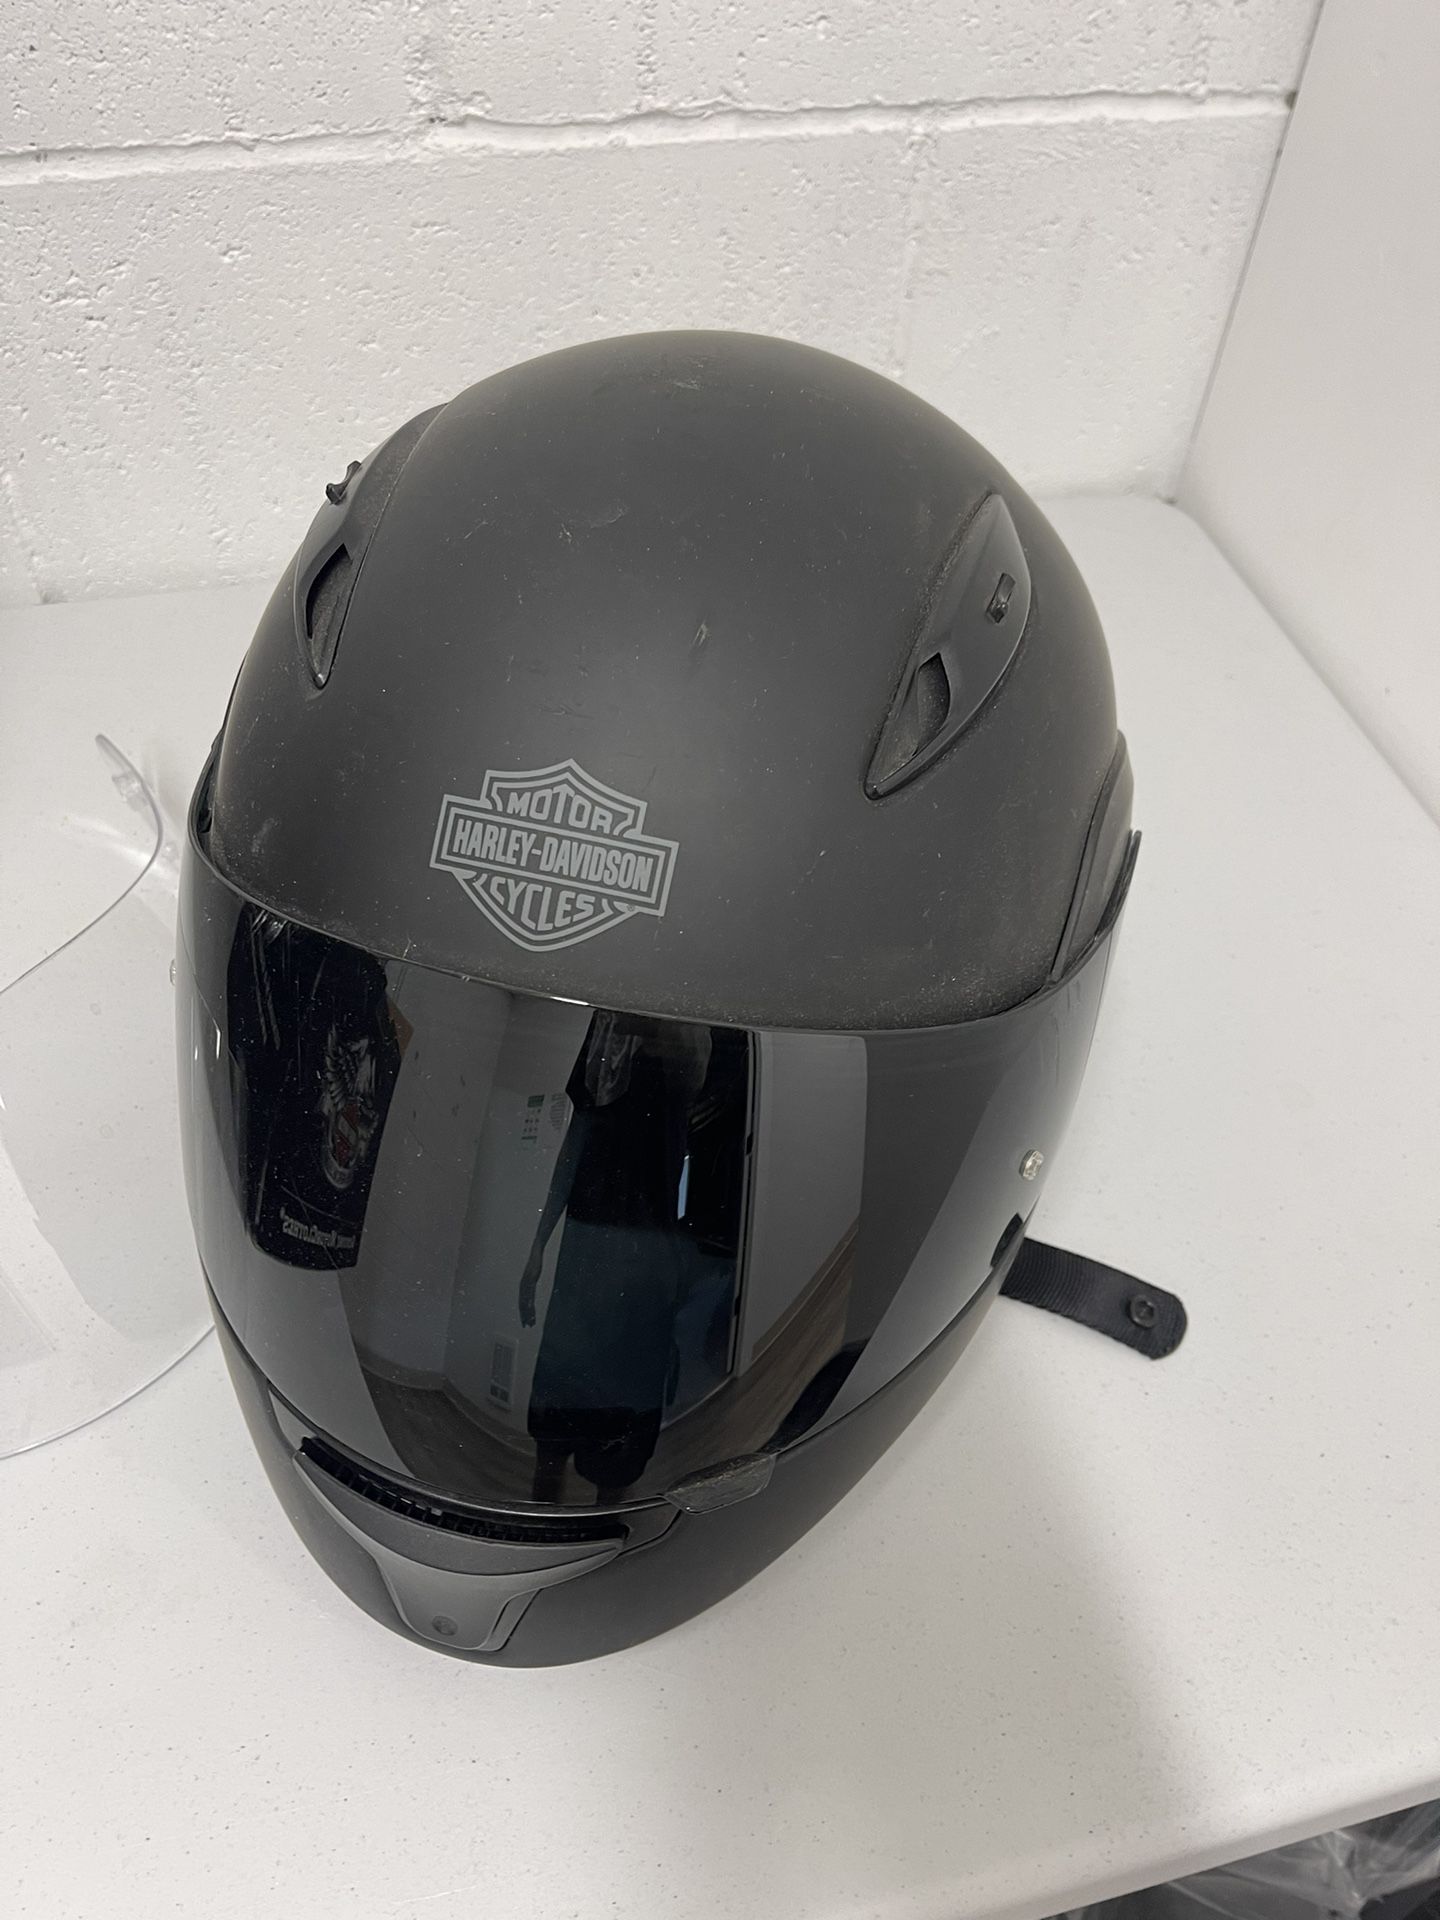 Harley Davidson Full Face Helmet Size M